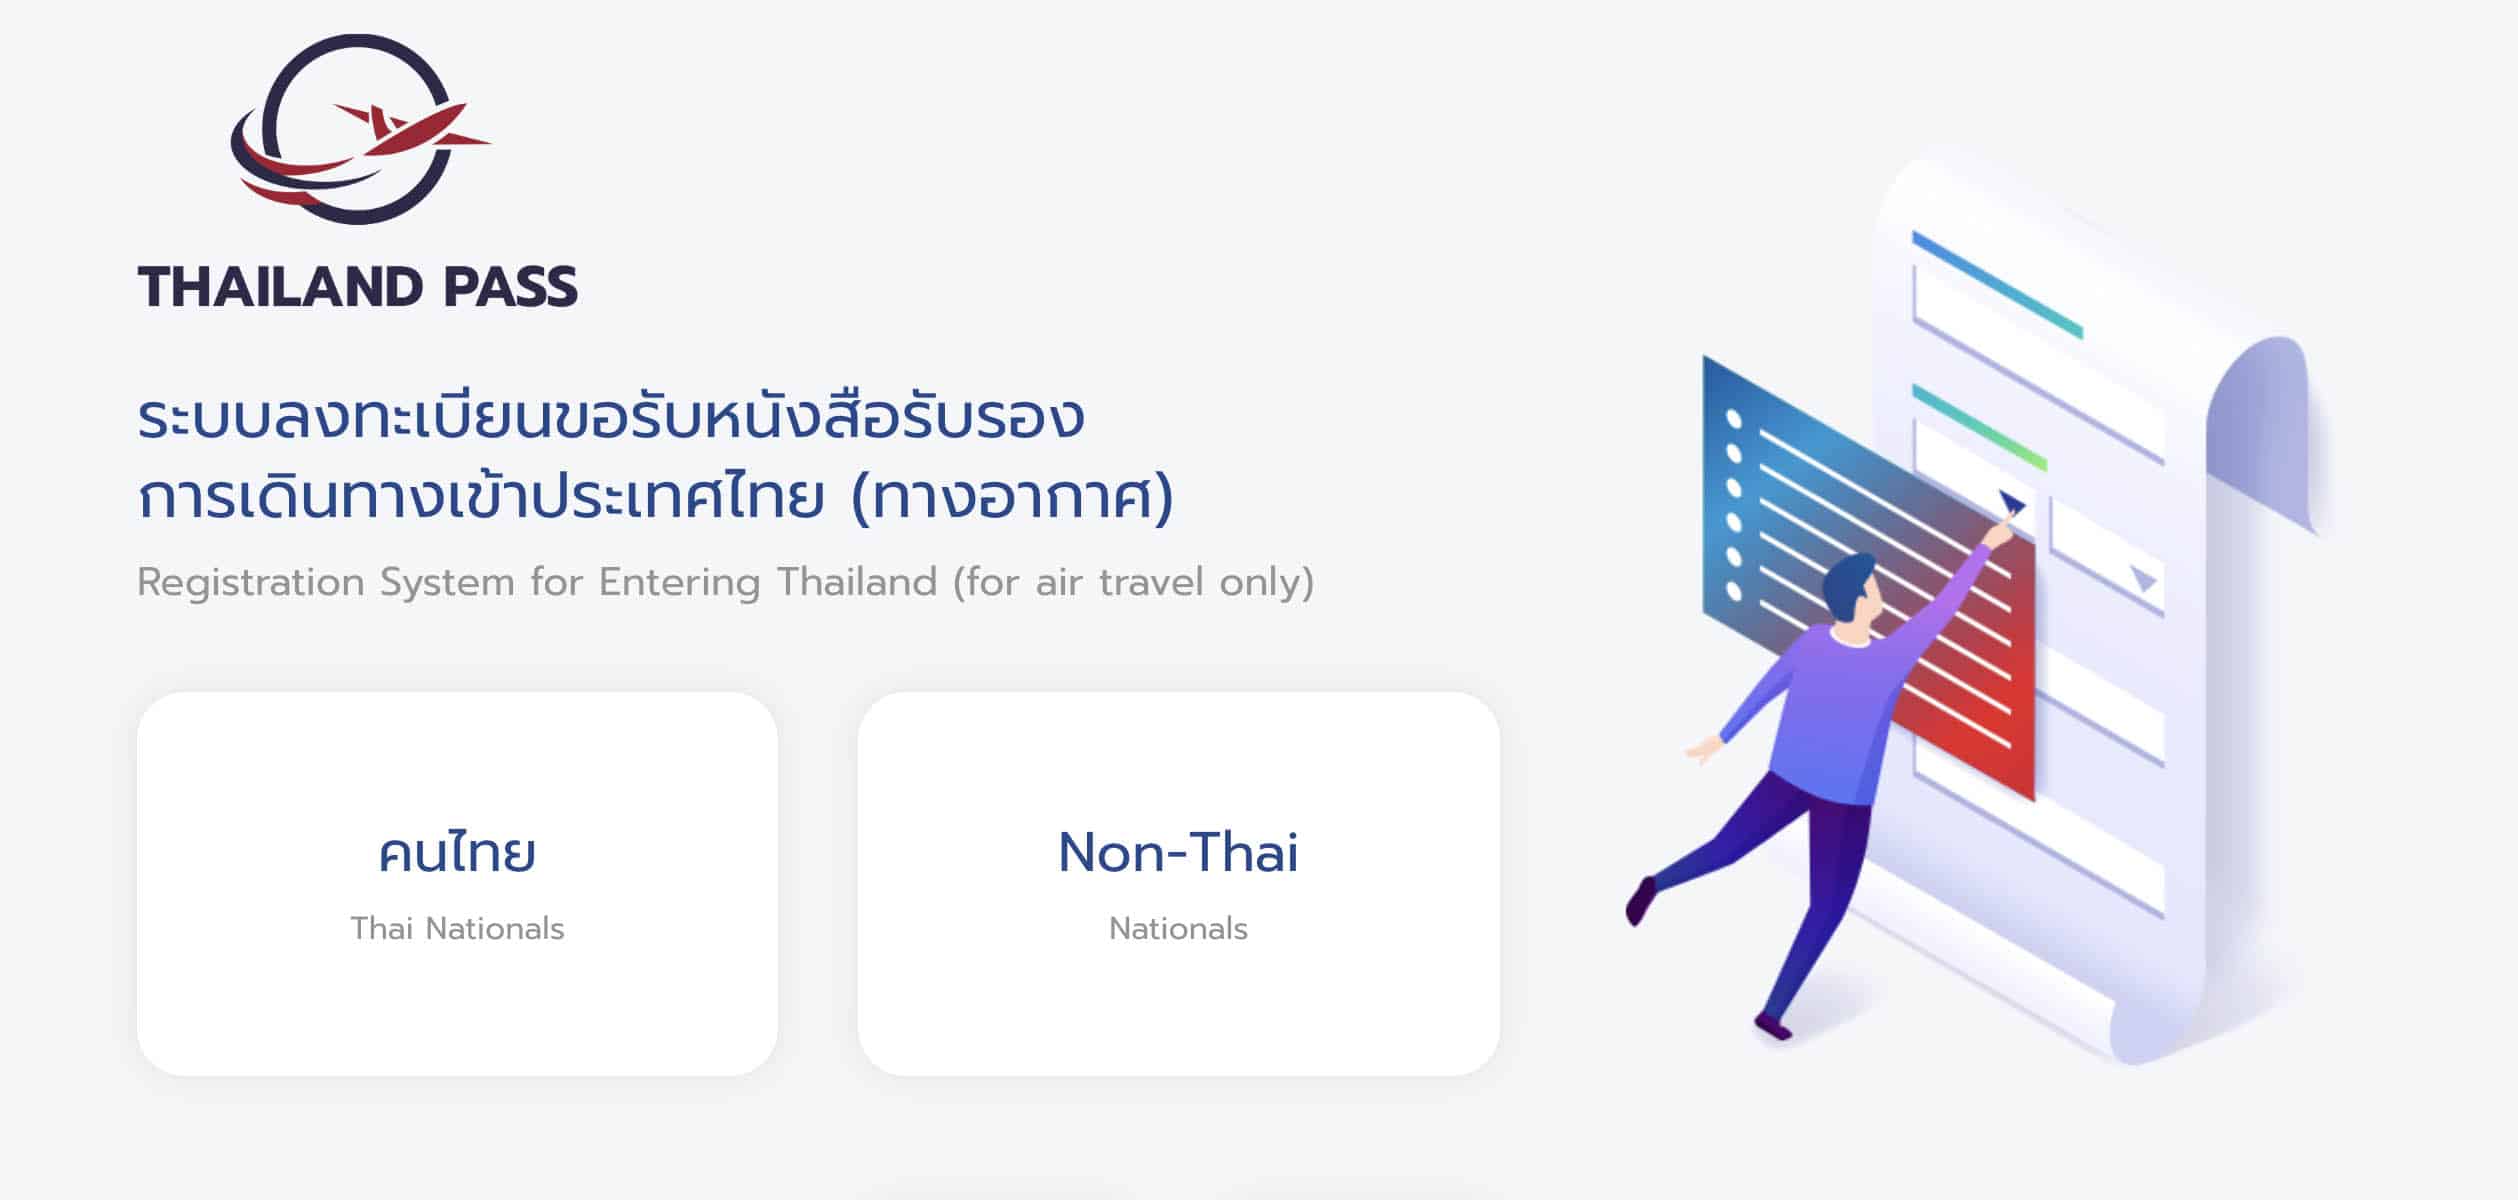 Thailand Pass Website